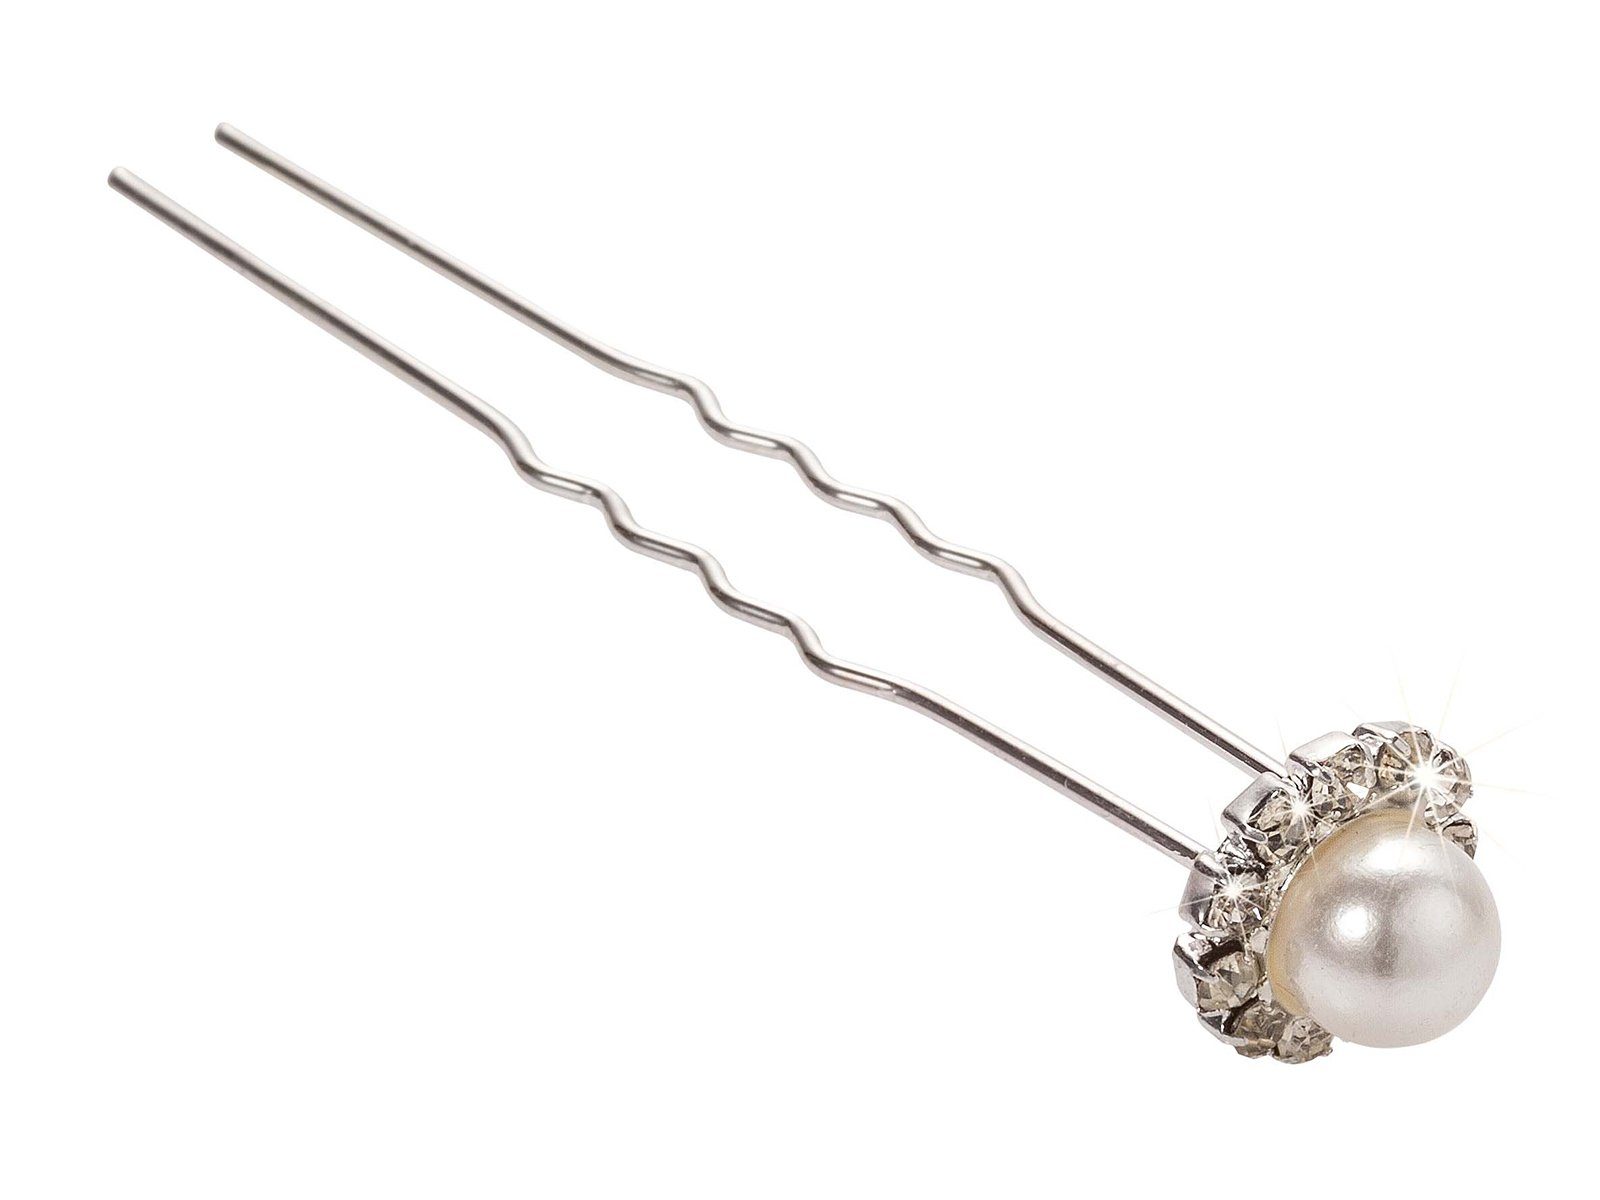 Kosmetex Haargummi Haarnadel mit Perle und Strass im Kreis, Haar-Styling-Accessoires